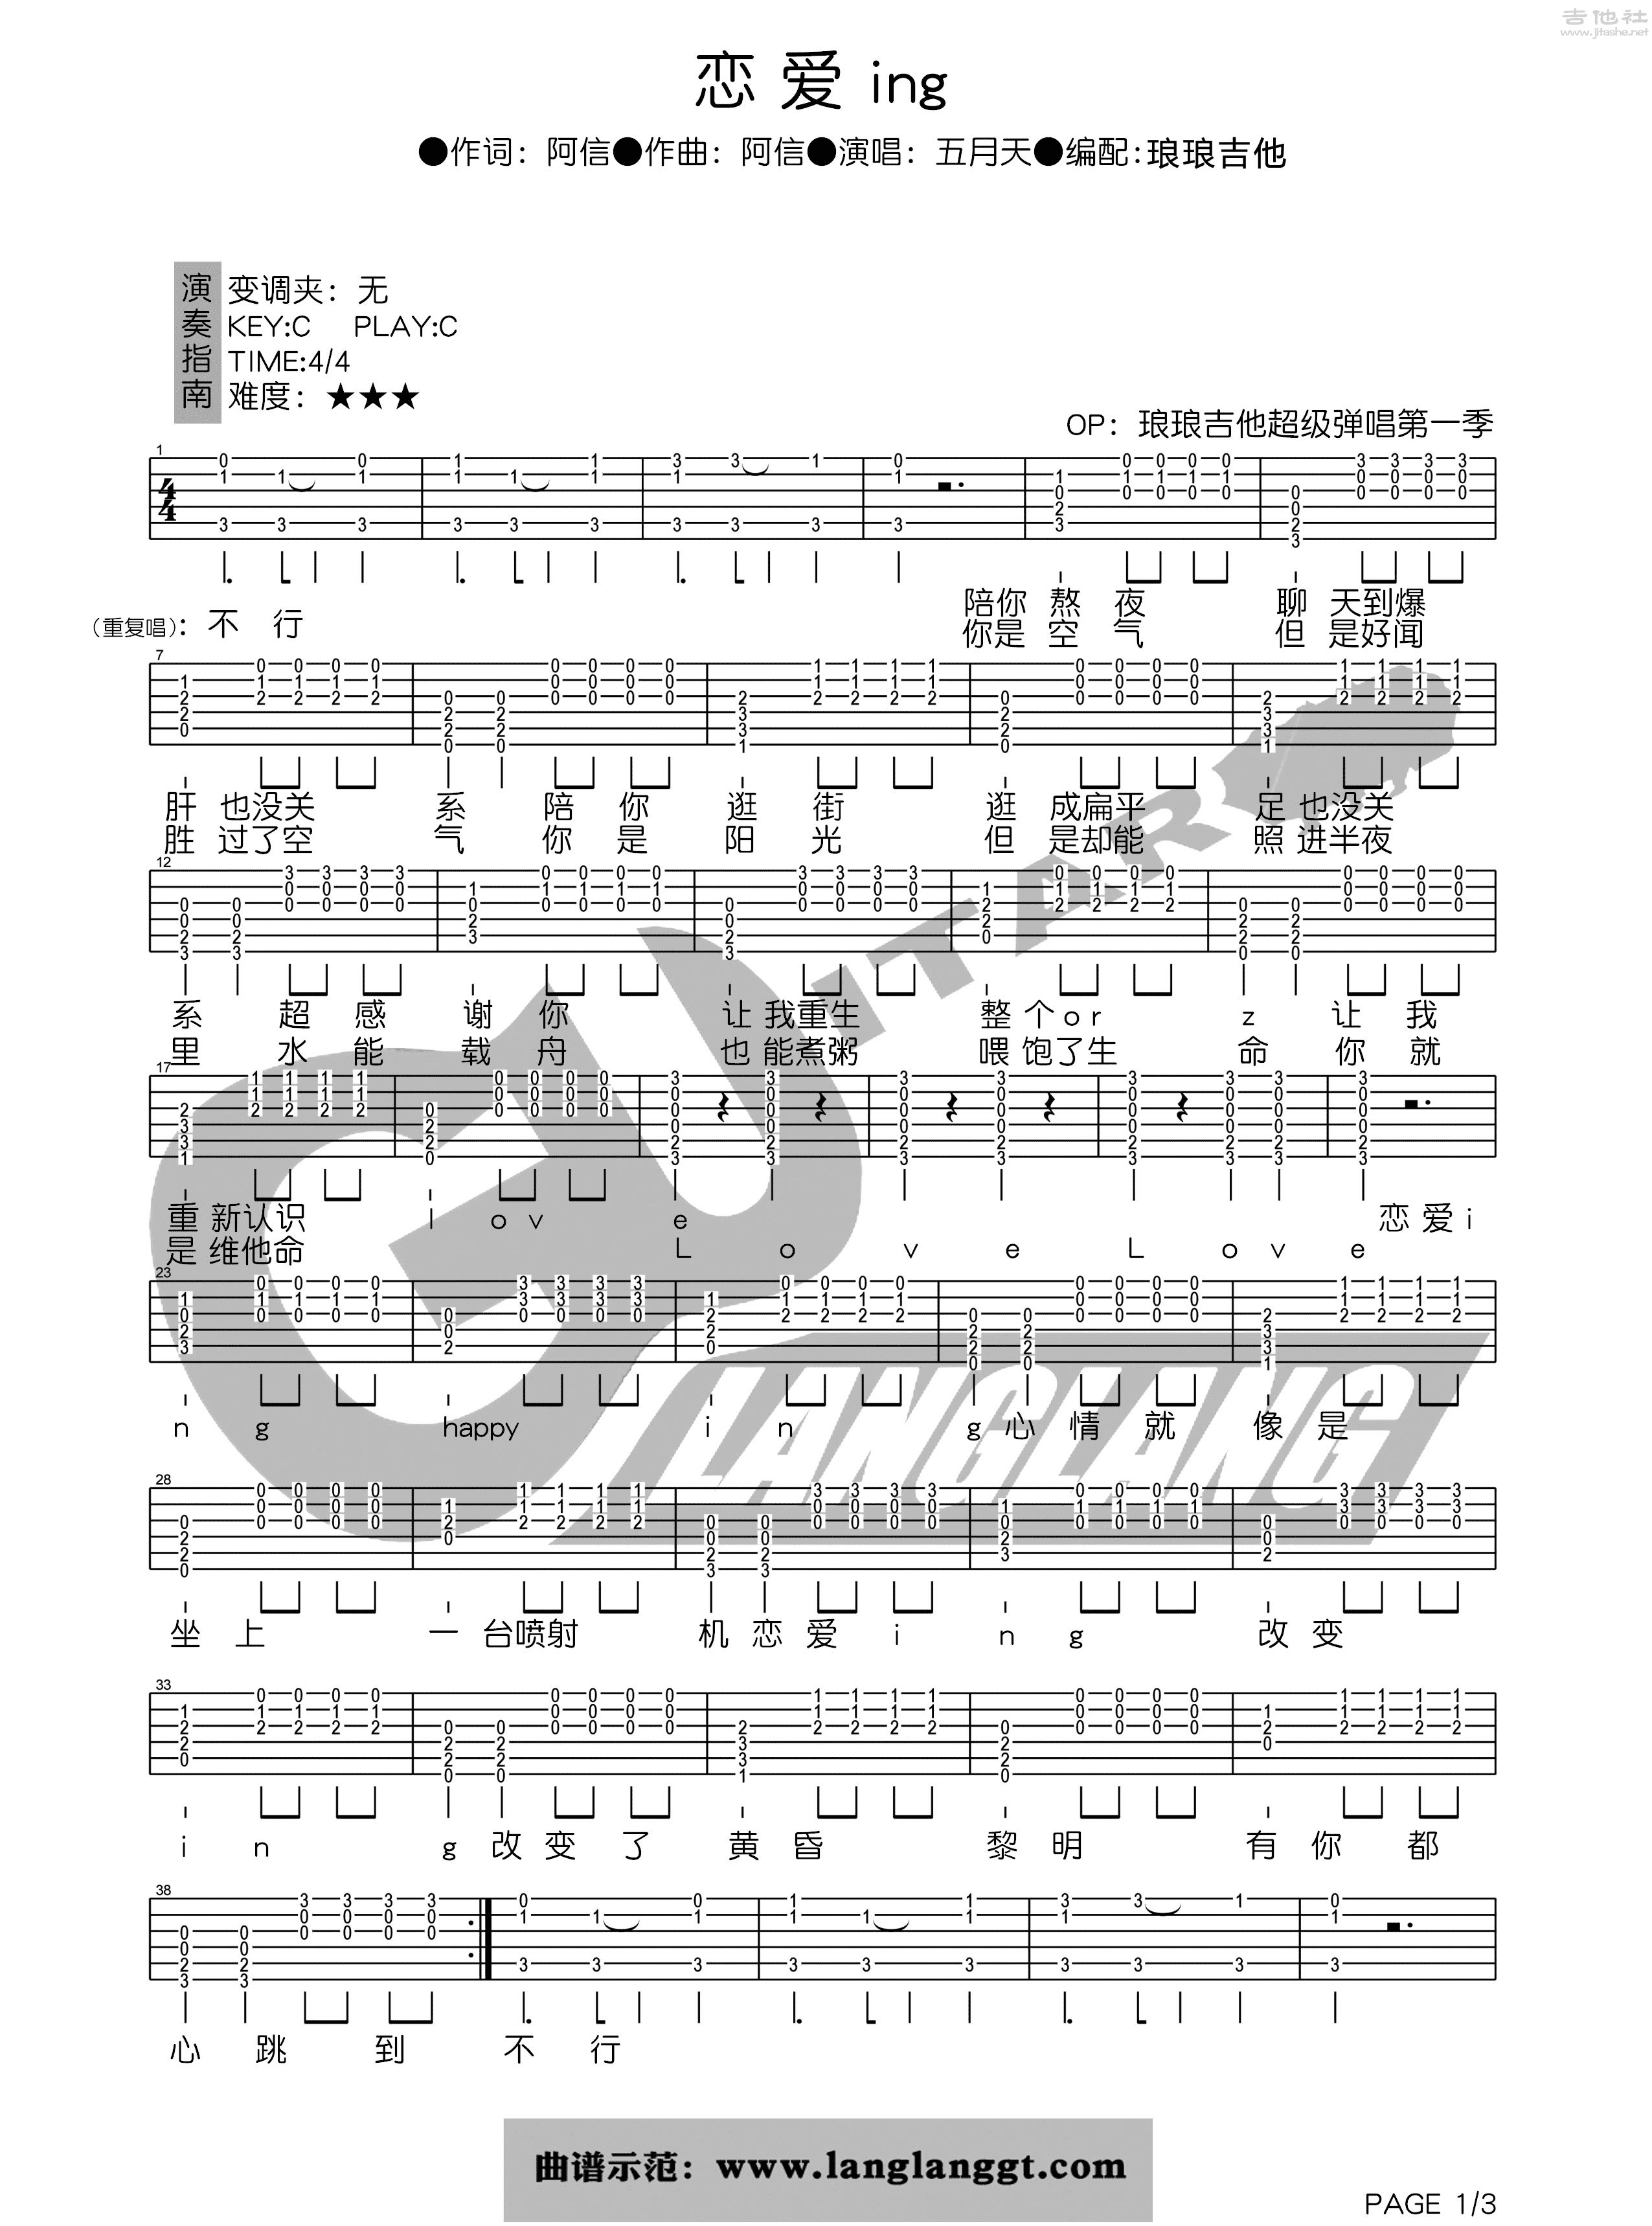 五月天 - 恋爱ing [尤克里里 弹唱] 吉他谱